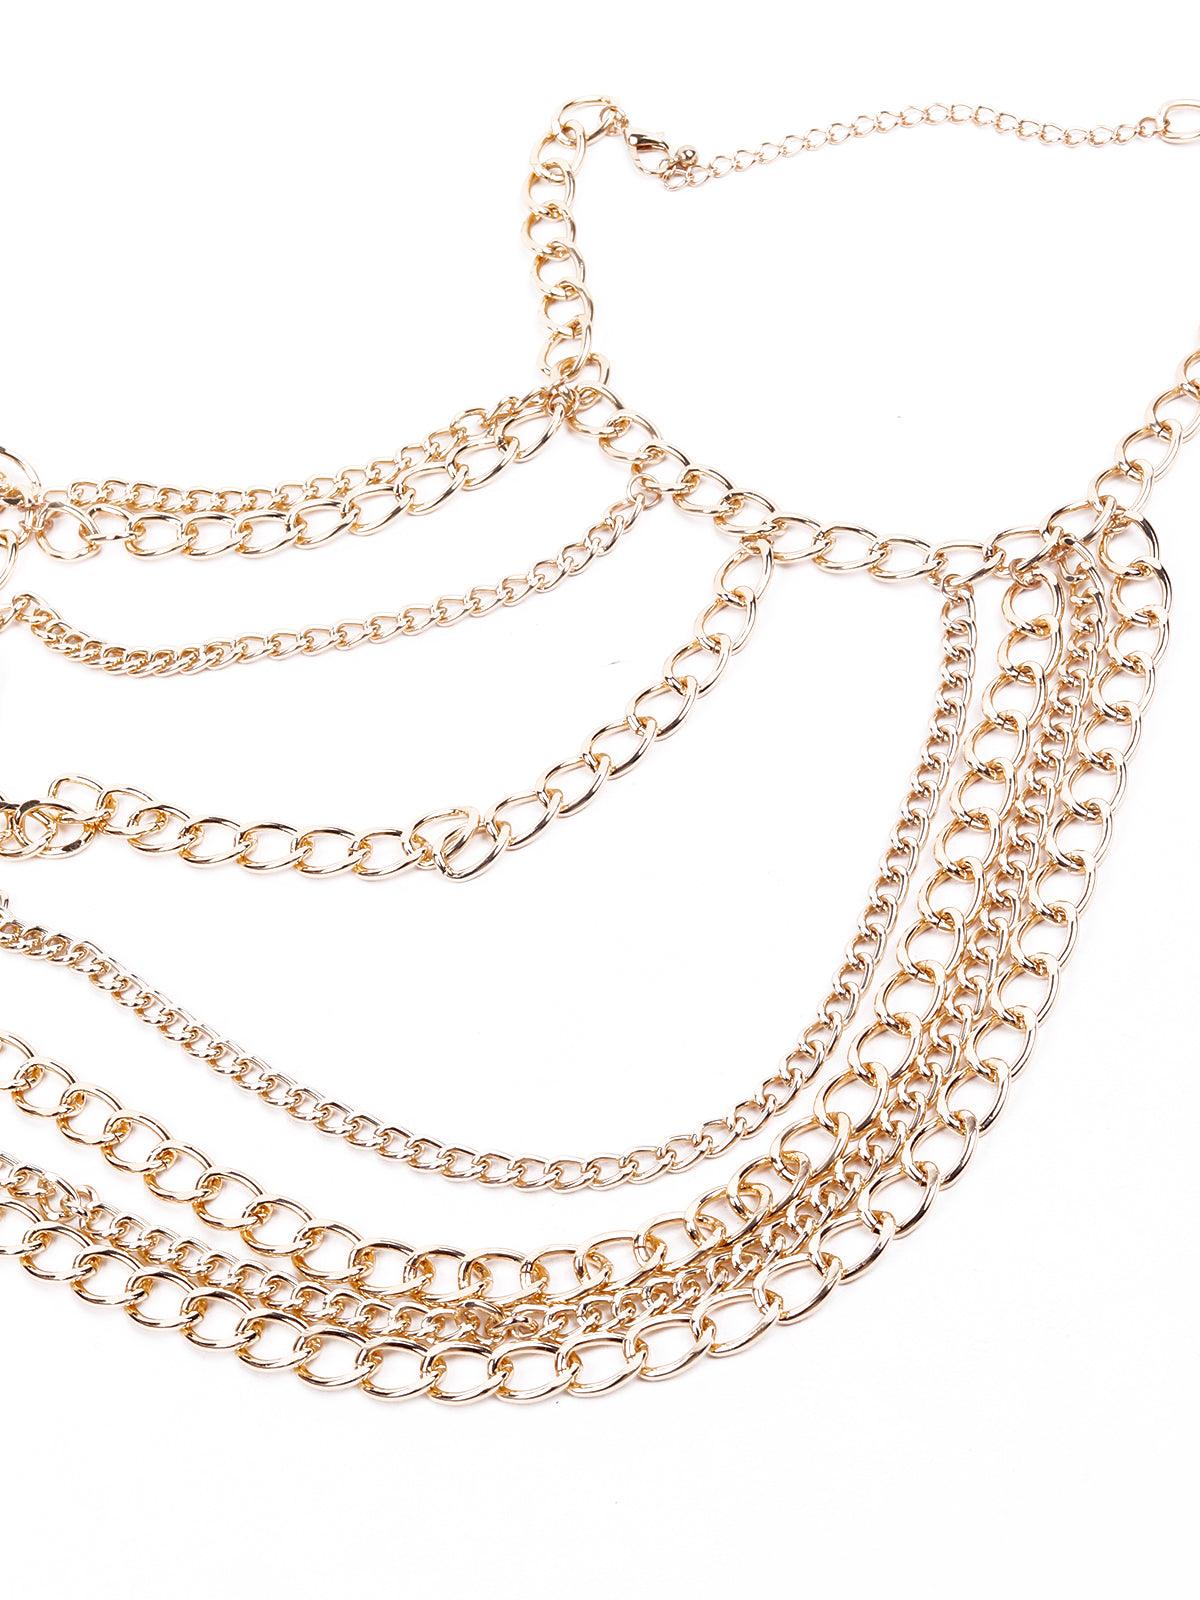 Multilayered gold tone necklace - Odette